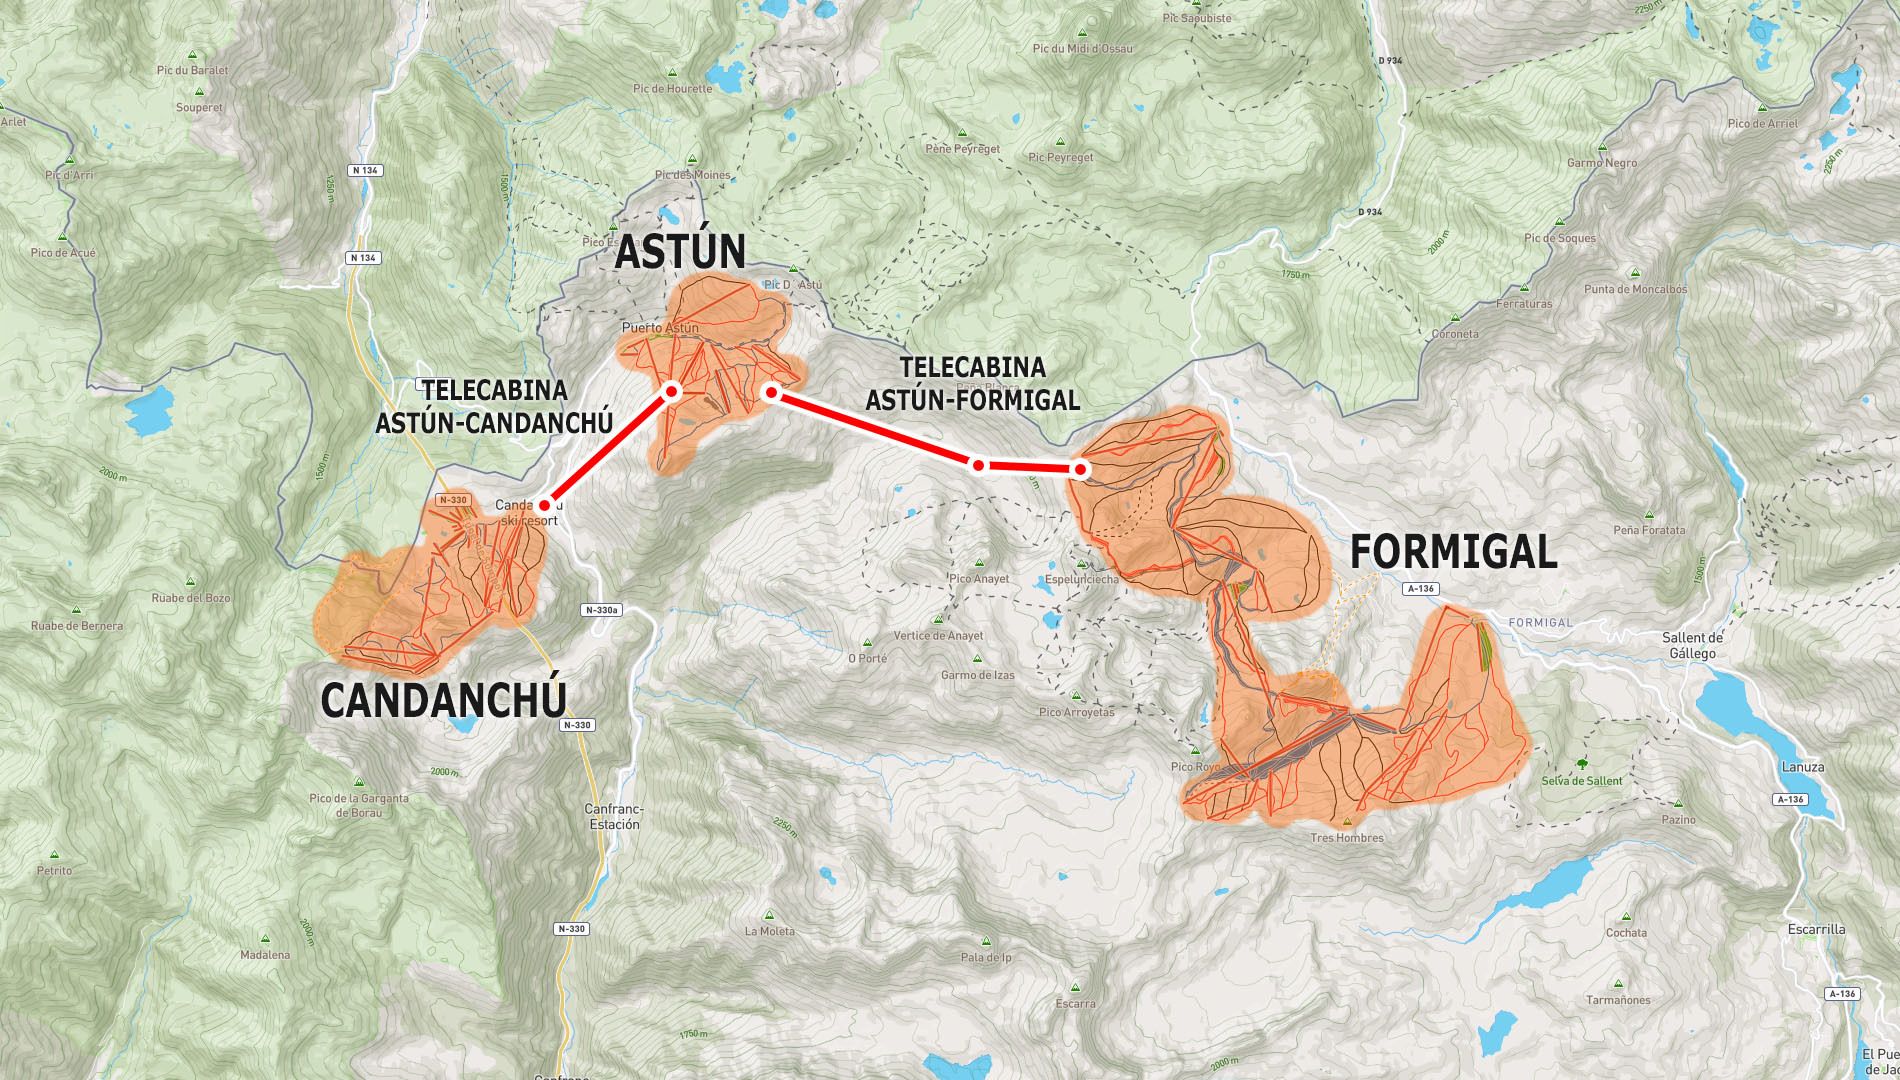 Aprobada la inversión para un telecabina Astun-Formigal: 250 km de pistas de esquí